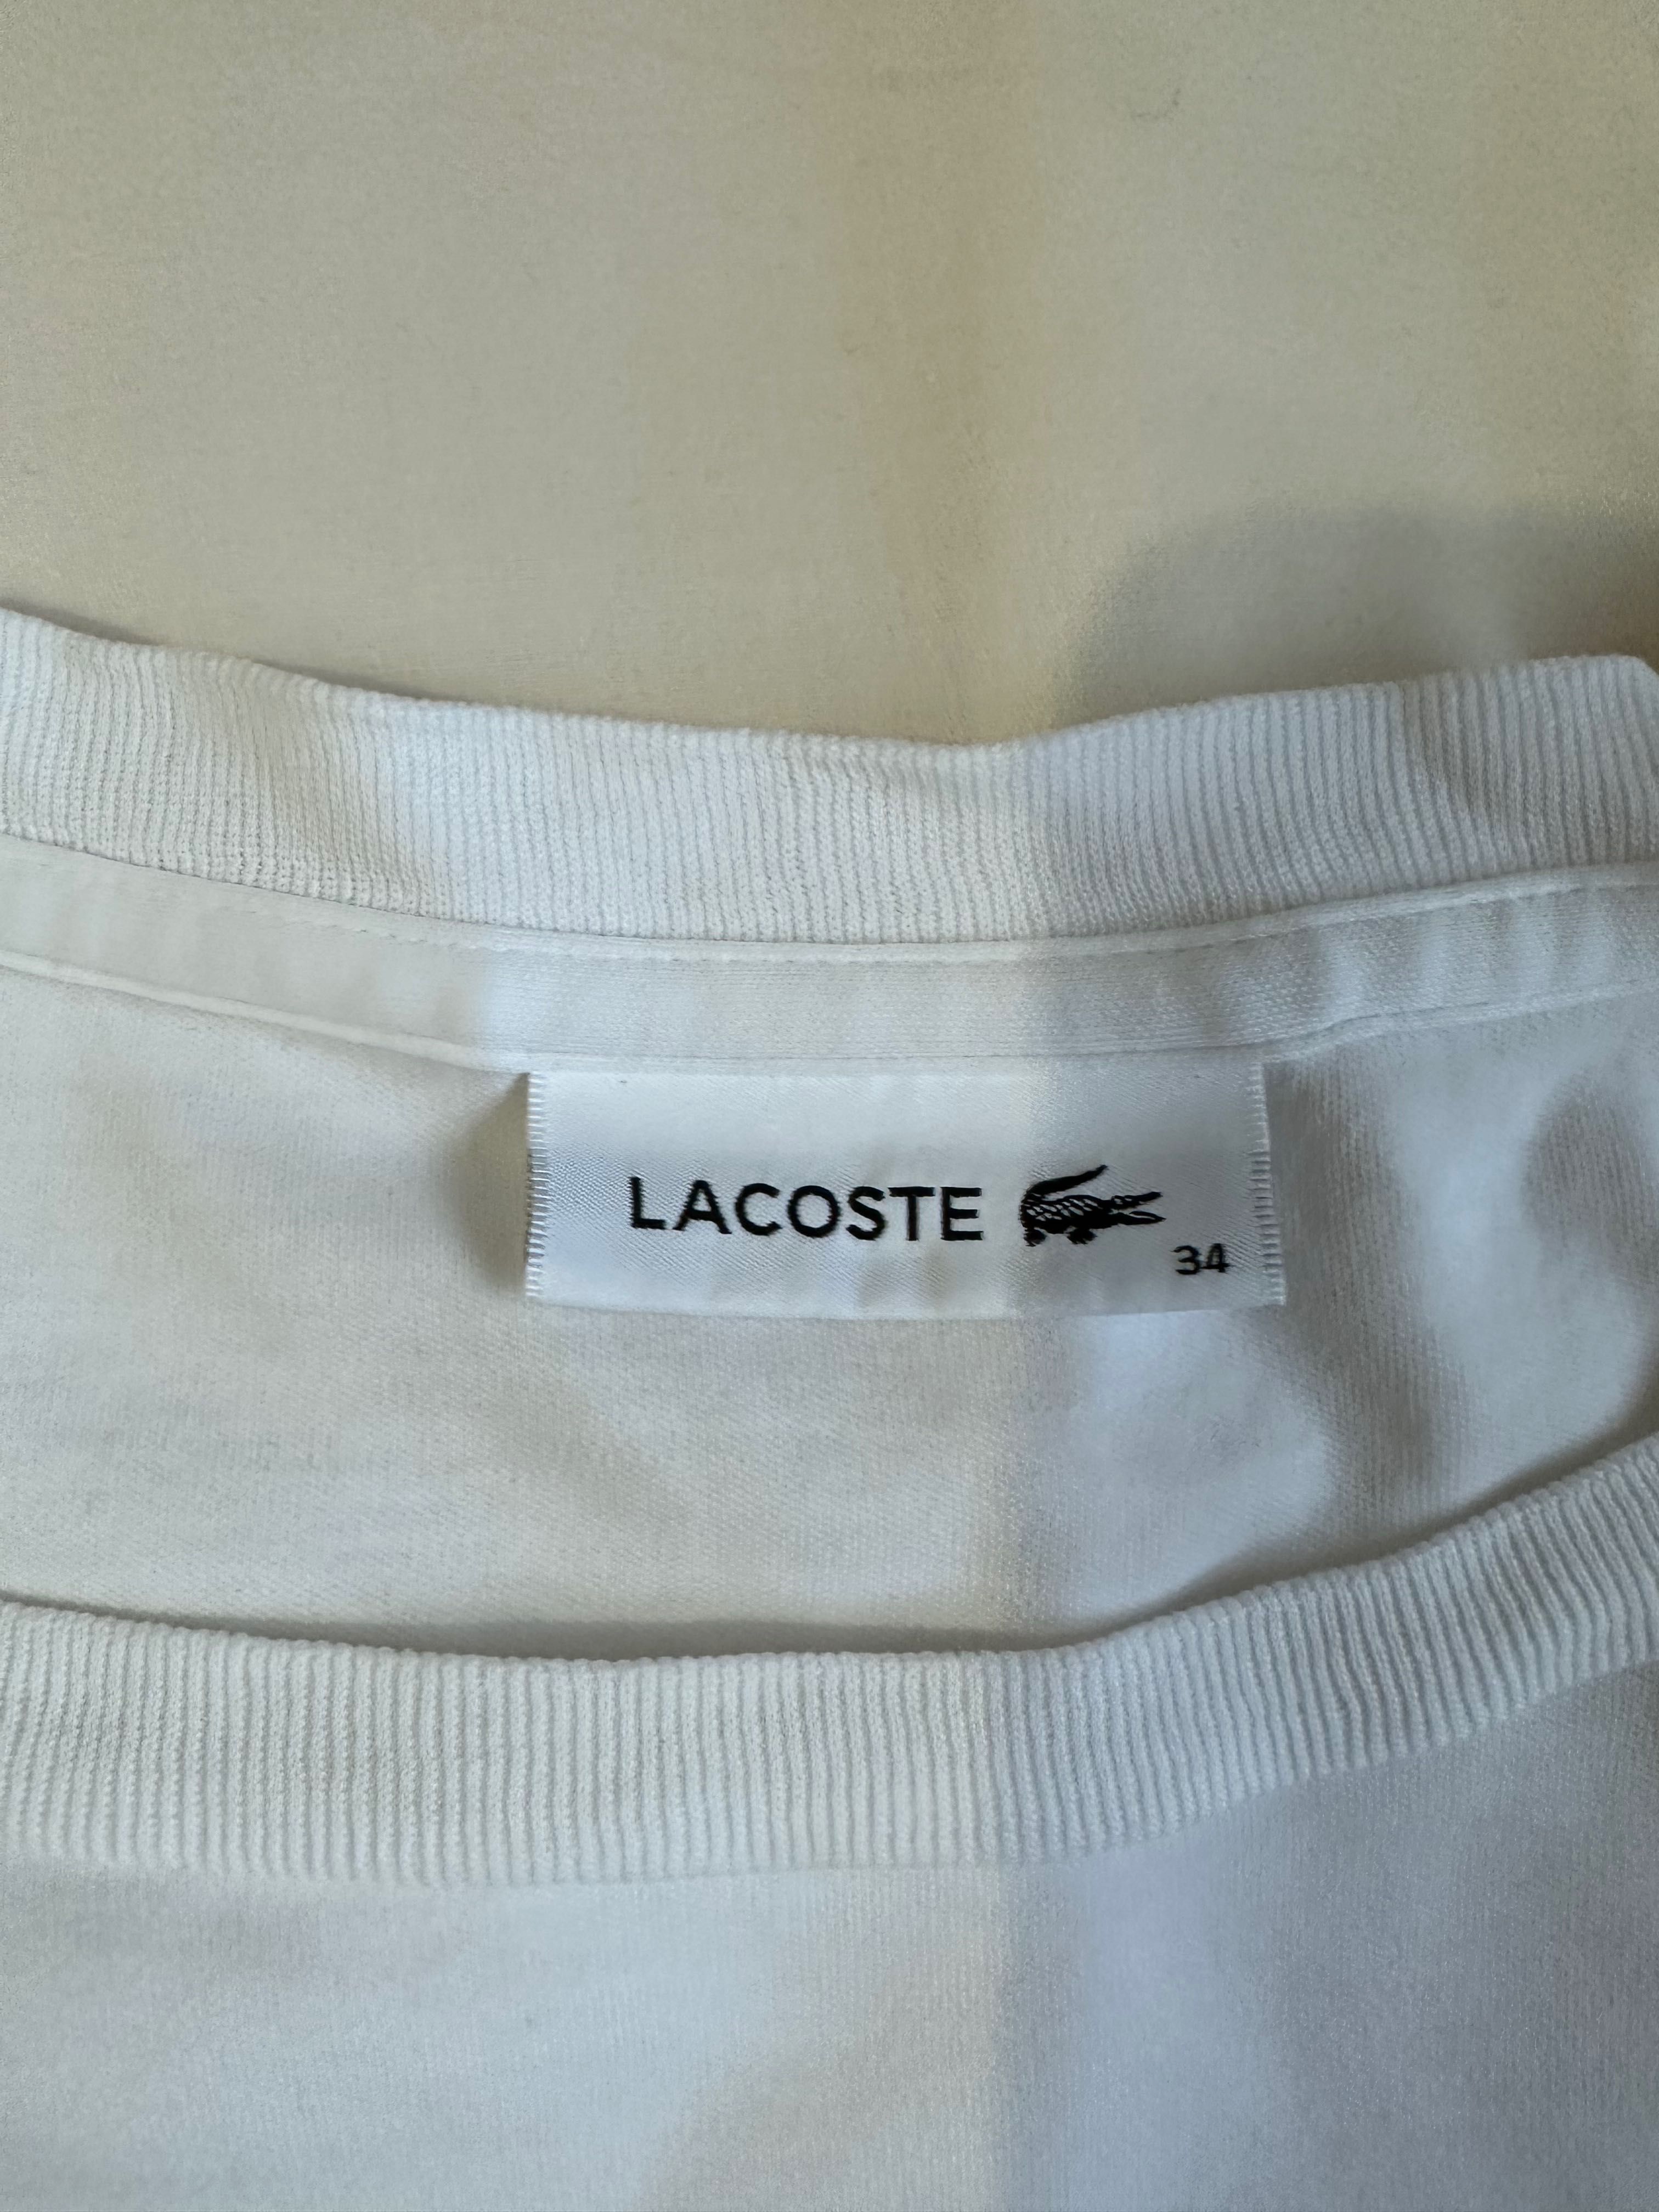 Оригінальна футболка Lacoste, жіноча,  розмір 34.